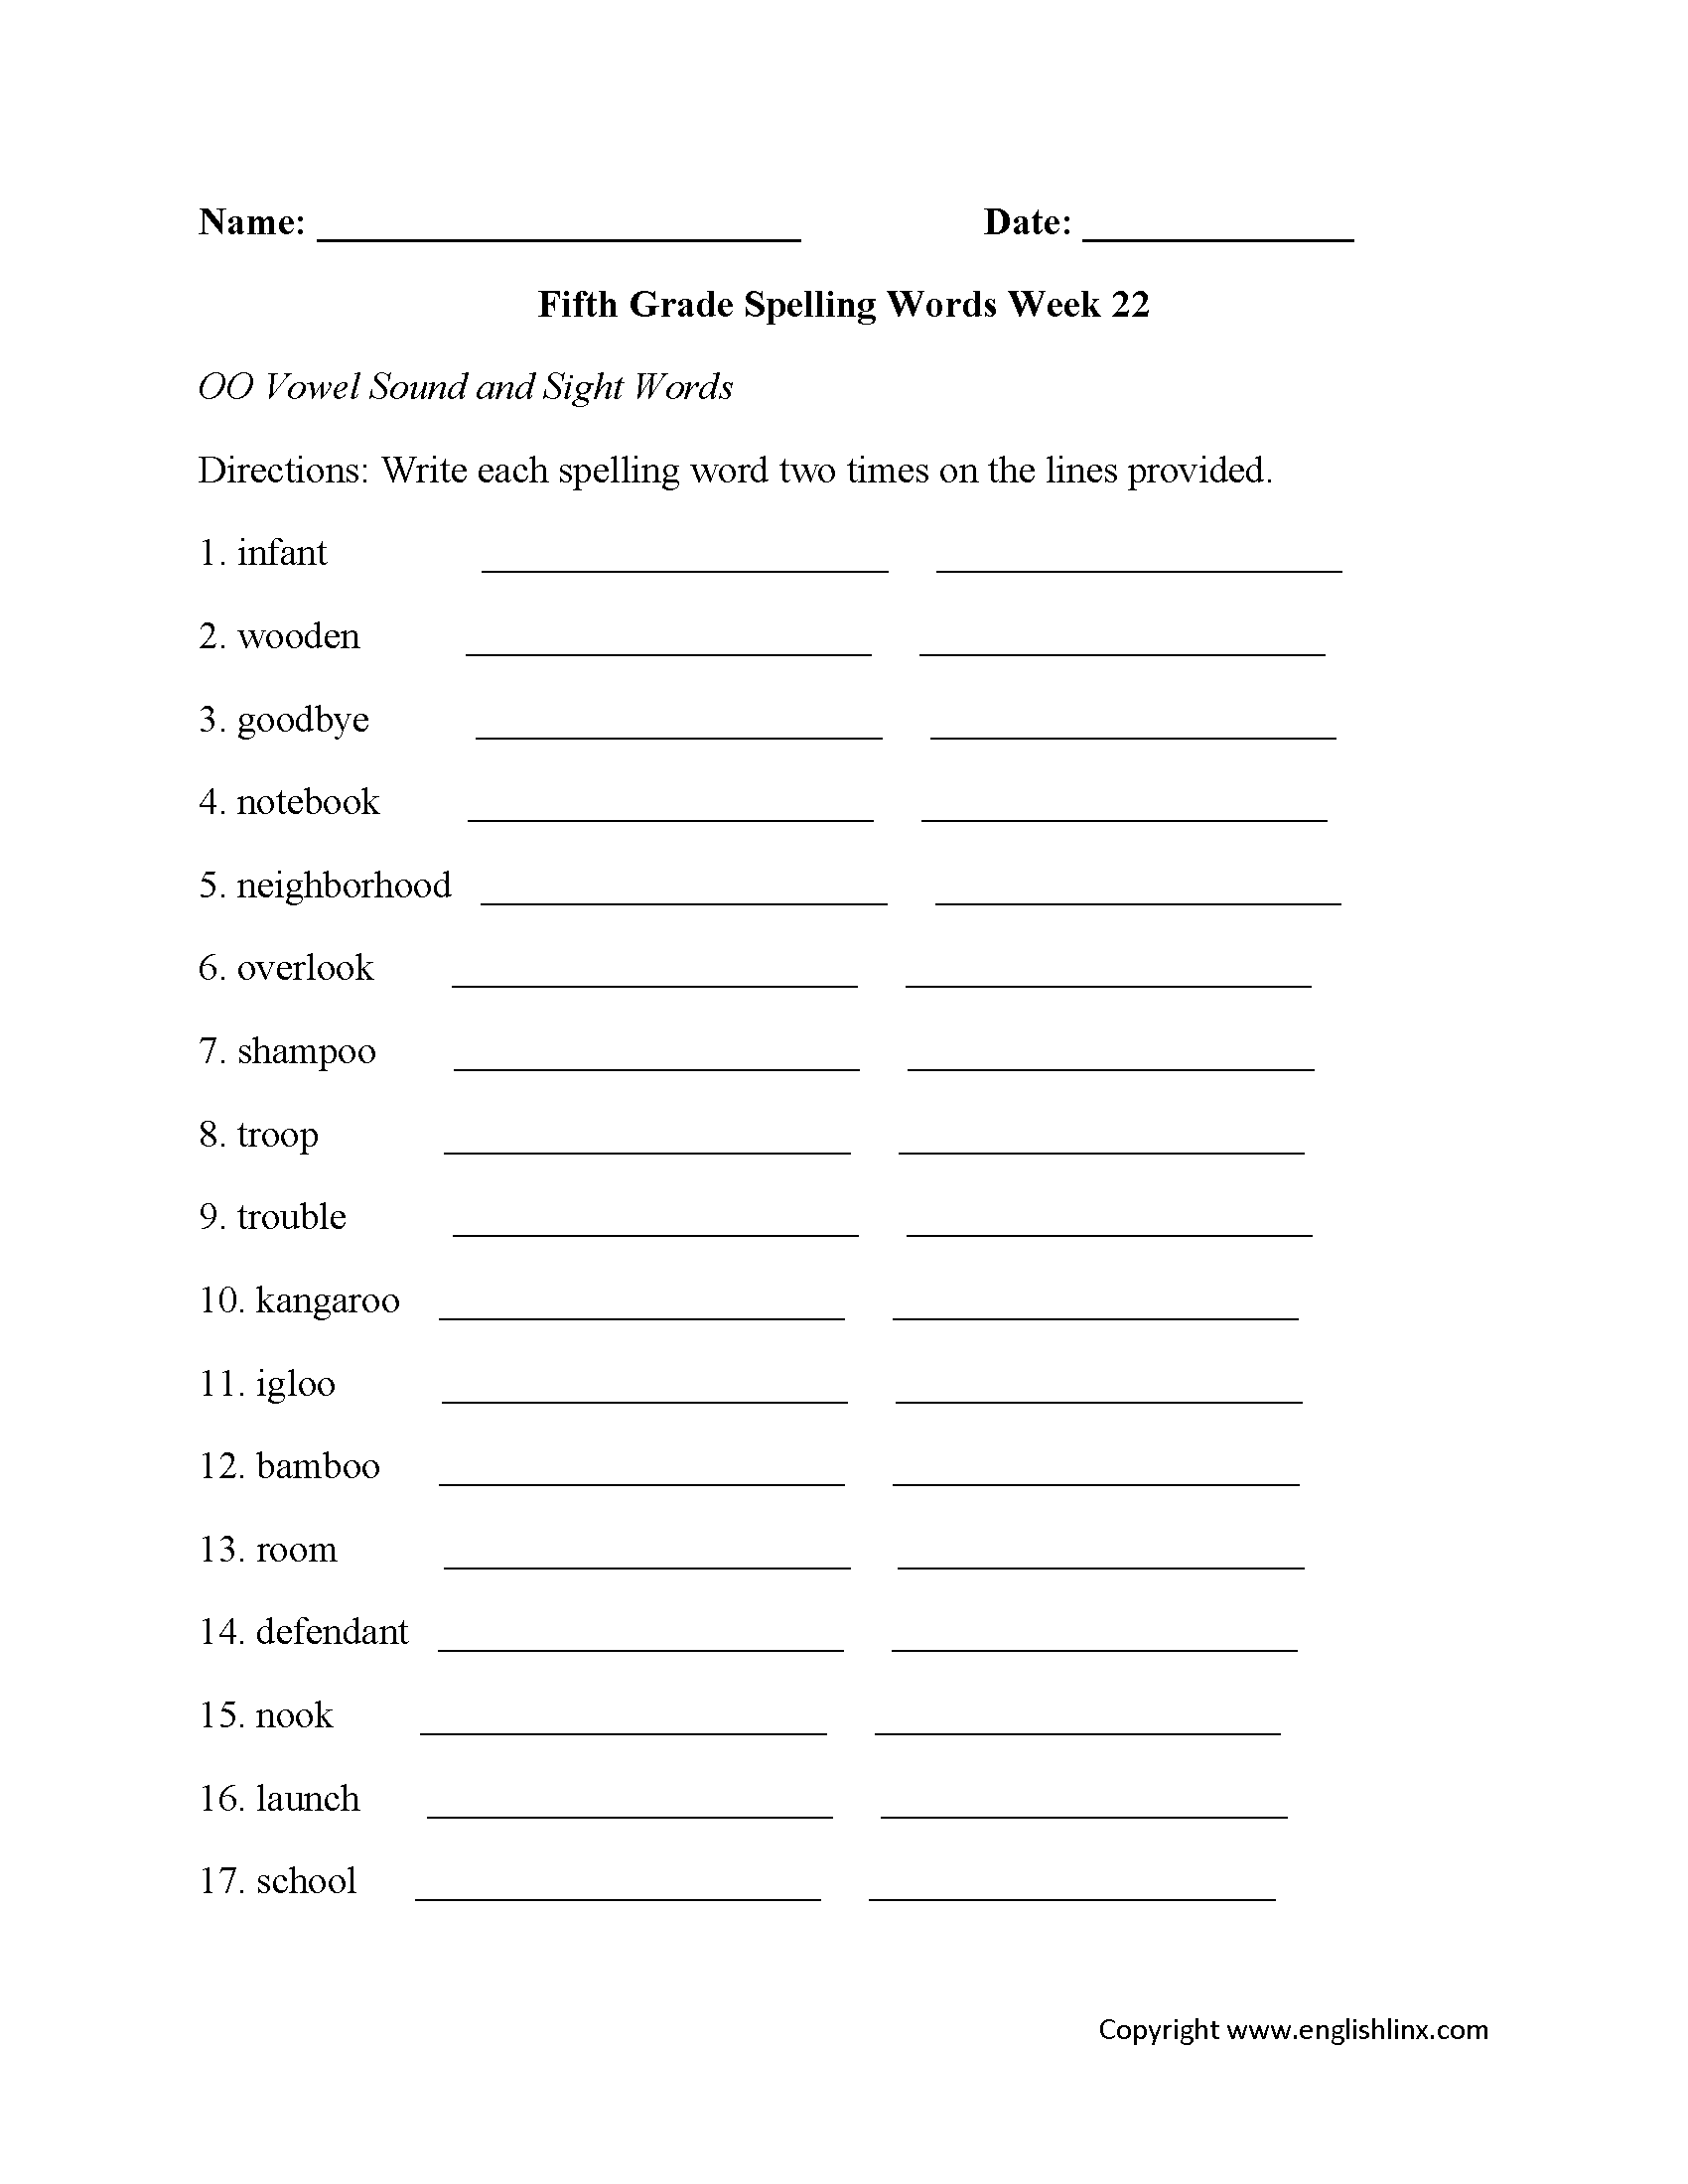 Week 22 OO Vowel Fifth Grade Spelling Worksheets